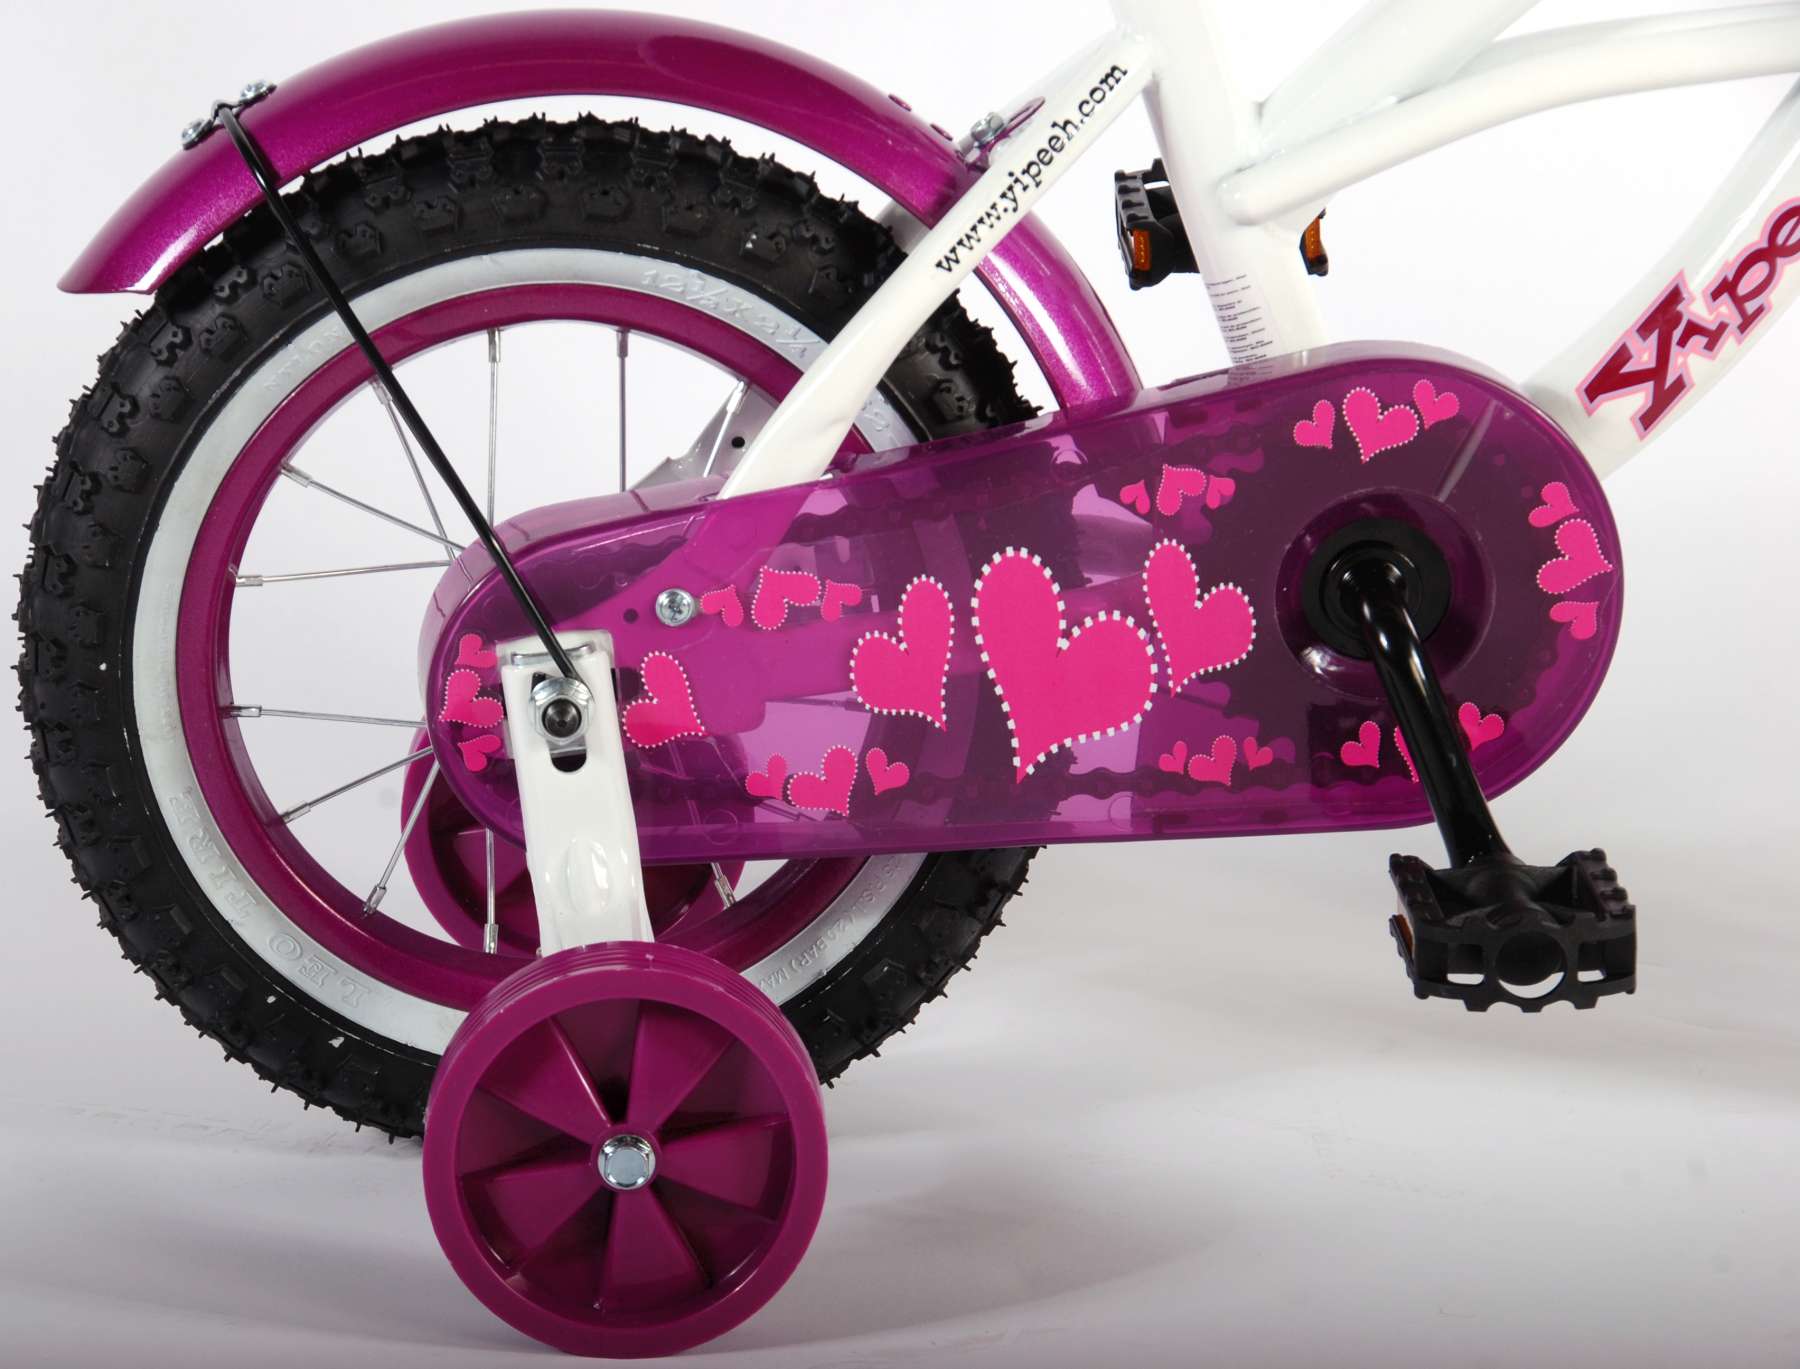 Kinderfahrrad Heart Cruiser für Mädchen 12 Zoll Kinderrad in Weiß/Lila